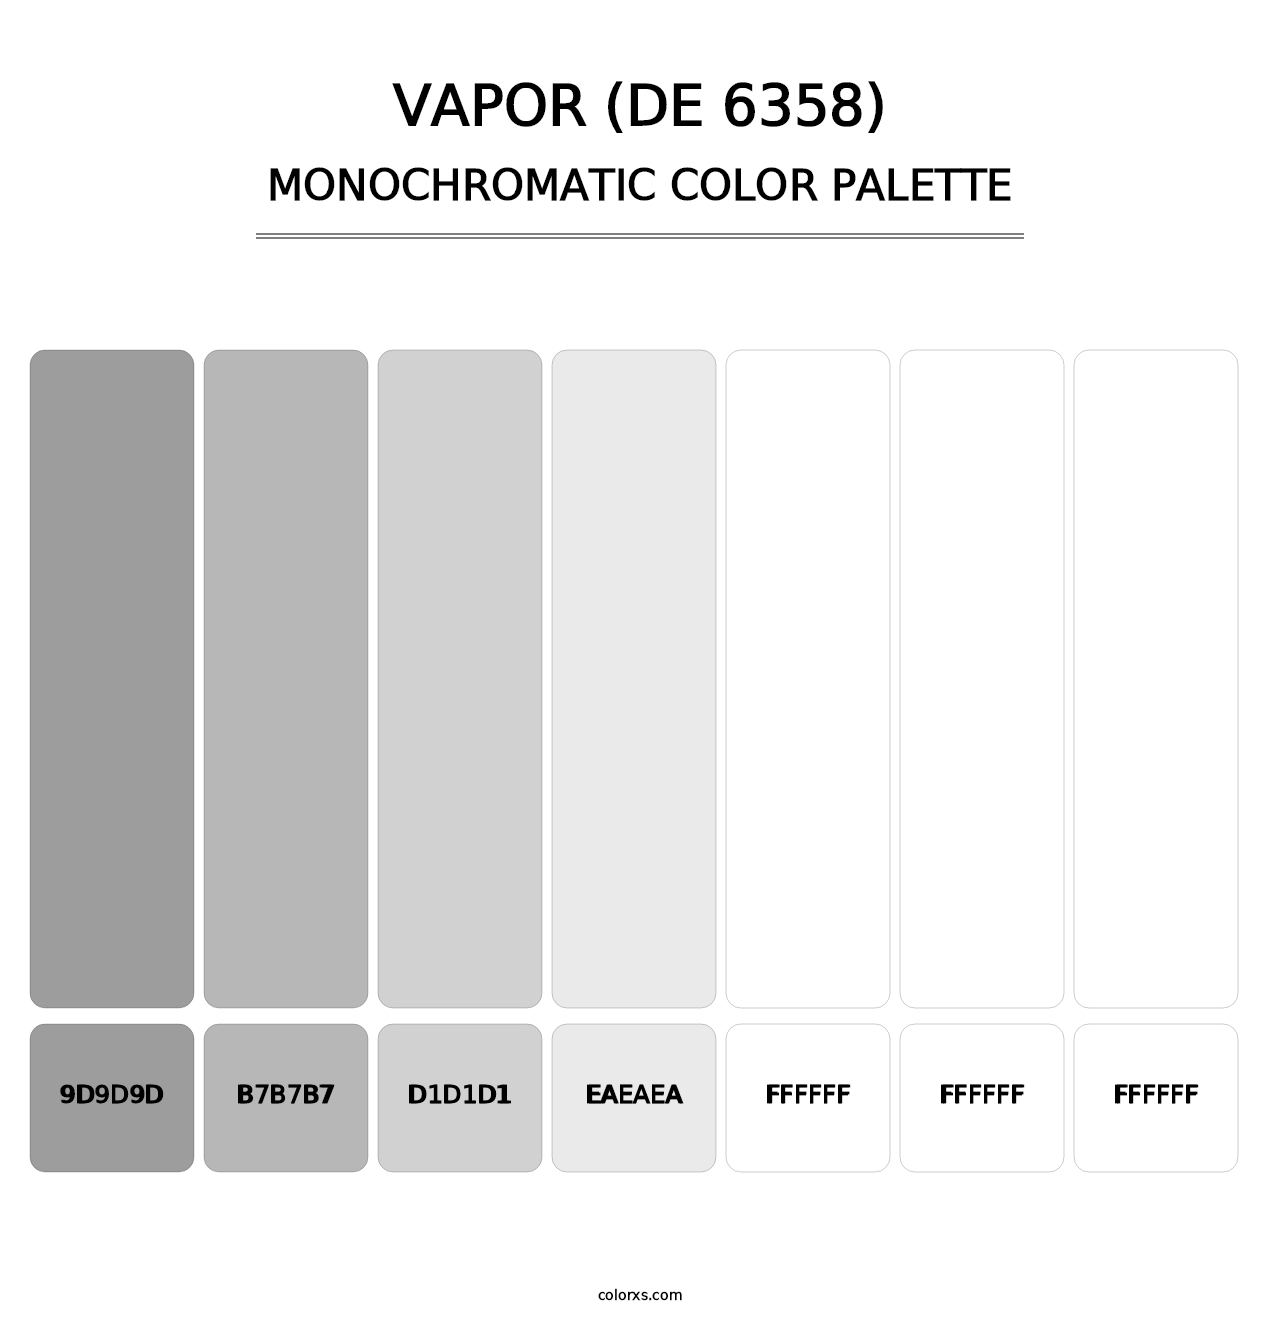 Vapor (DE 6358) - Monochromatic Color Palette